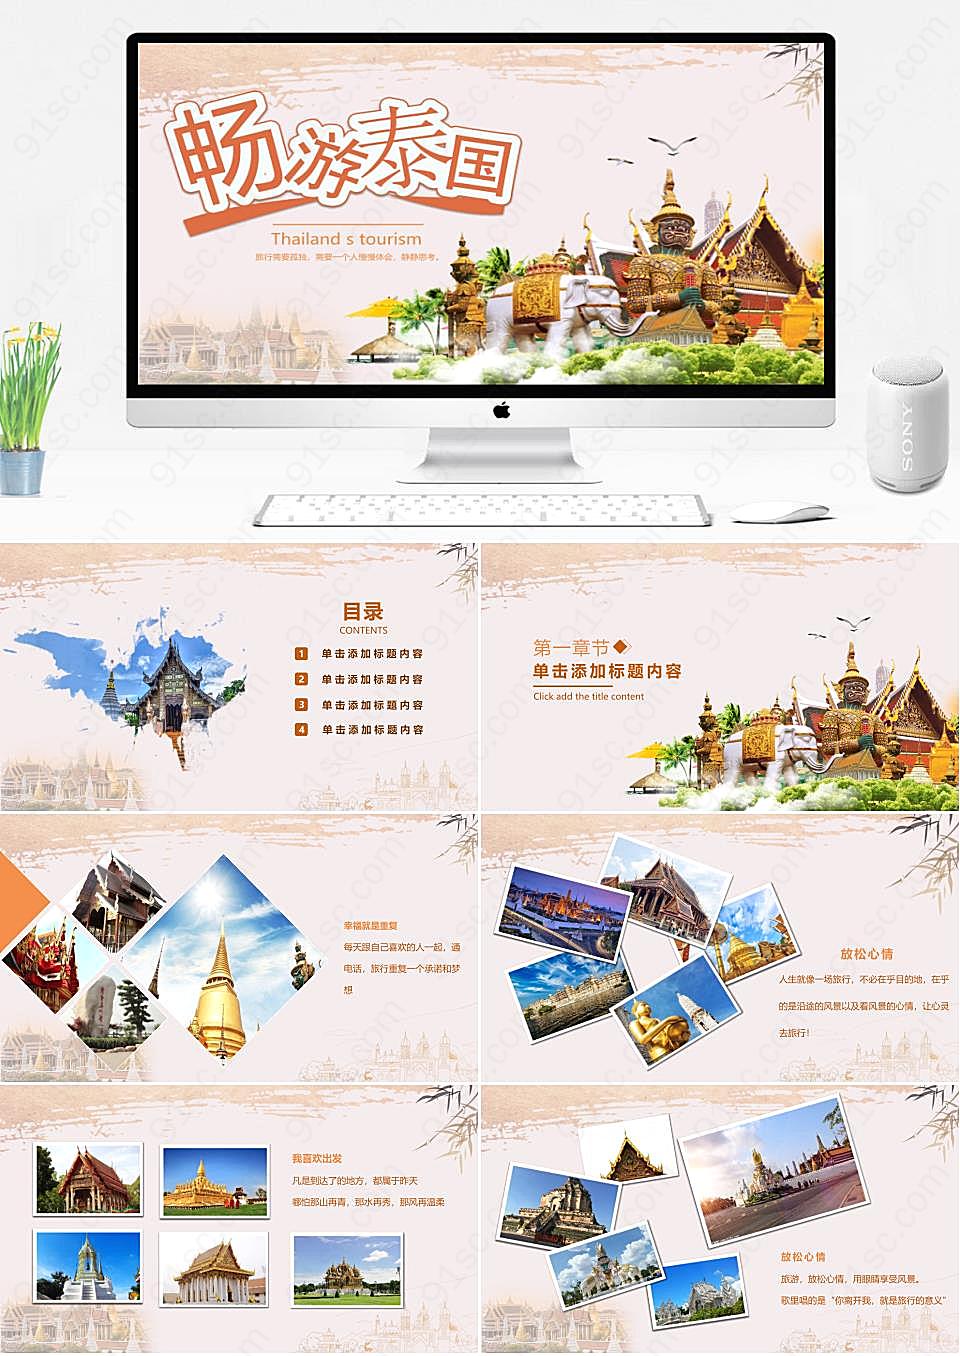 泰国旅游攻略PPT素材文化探索与畅游体验旅游旅行PPT模板下载